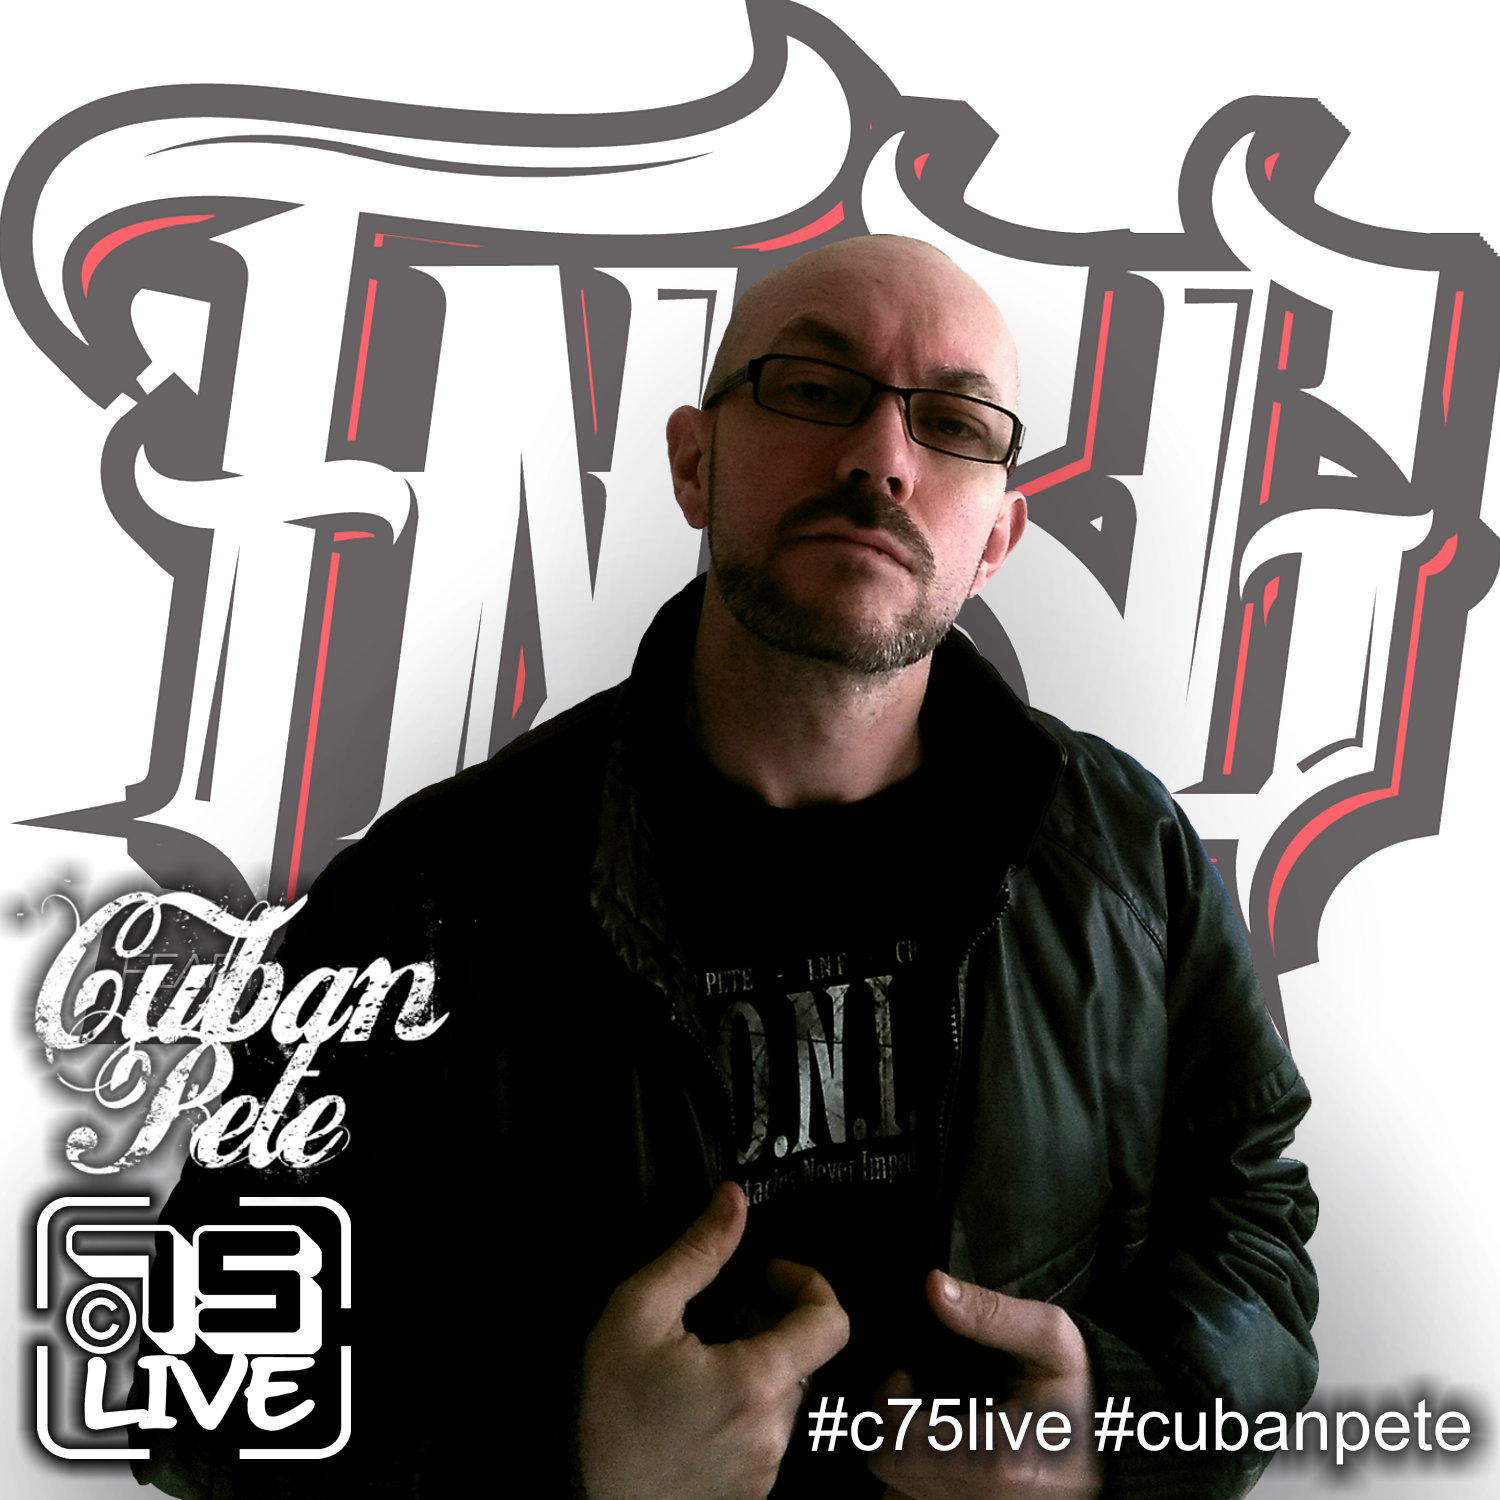 C75 Live: C75 LIVE x FNBG Records - Cuban Pete signs management deal